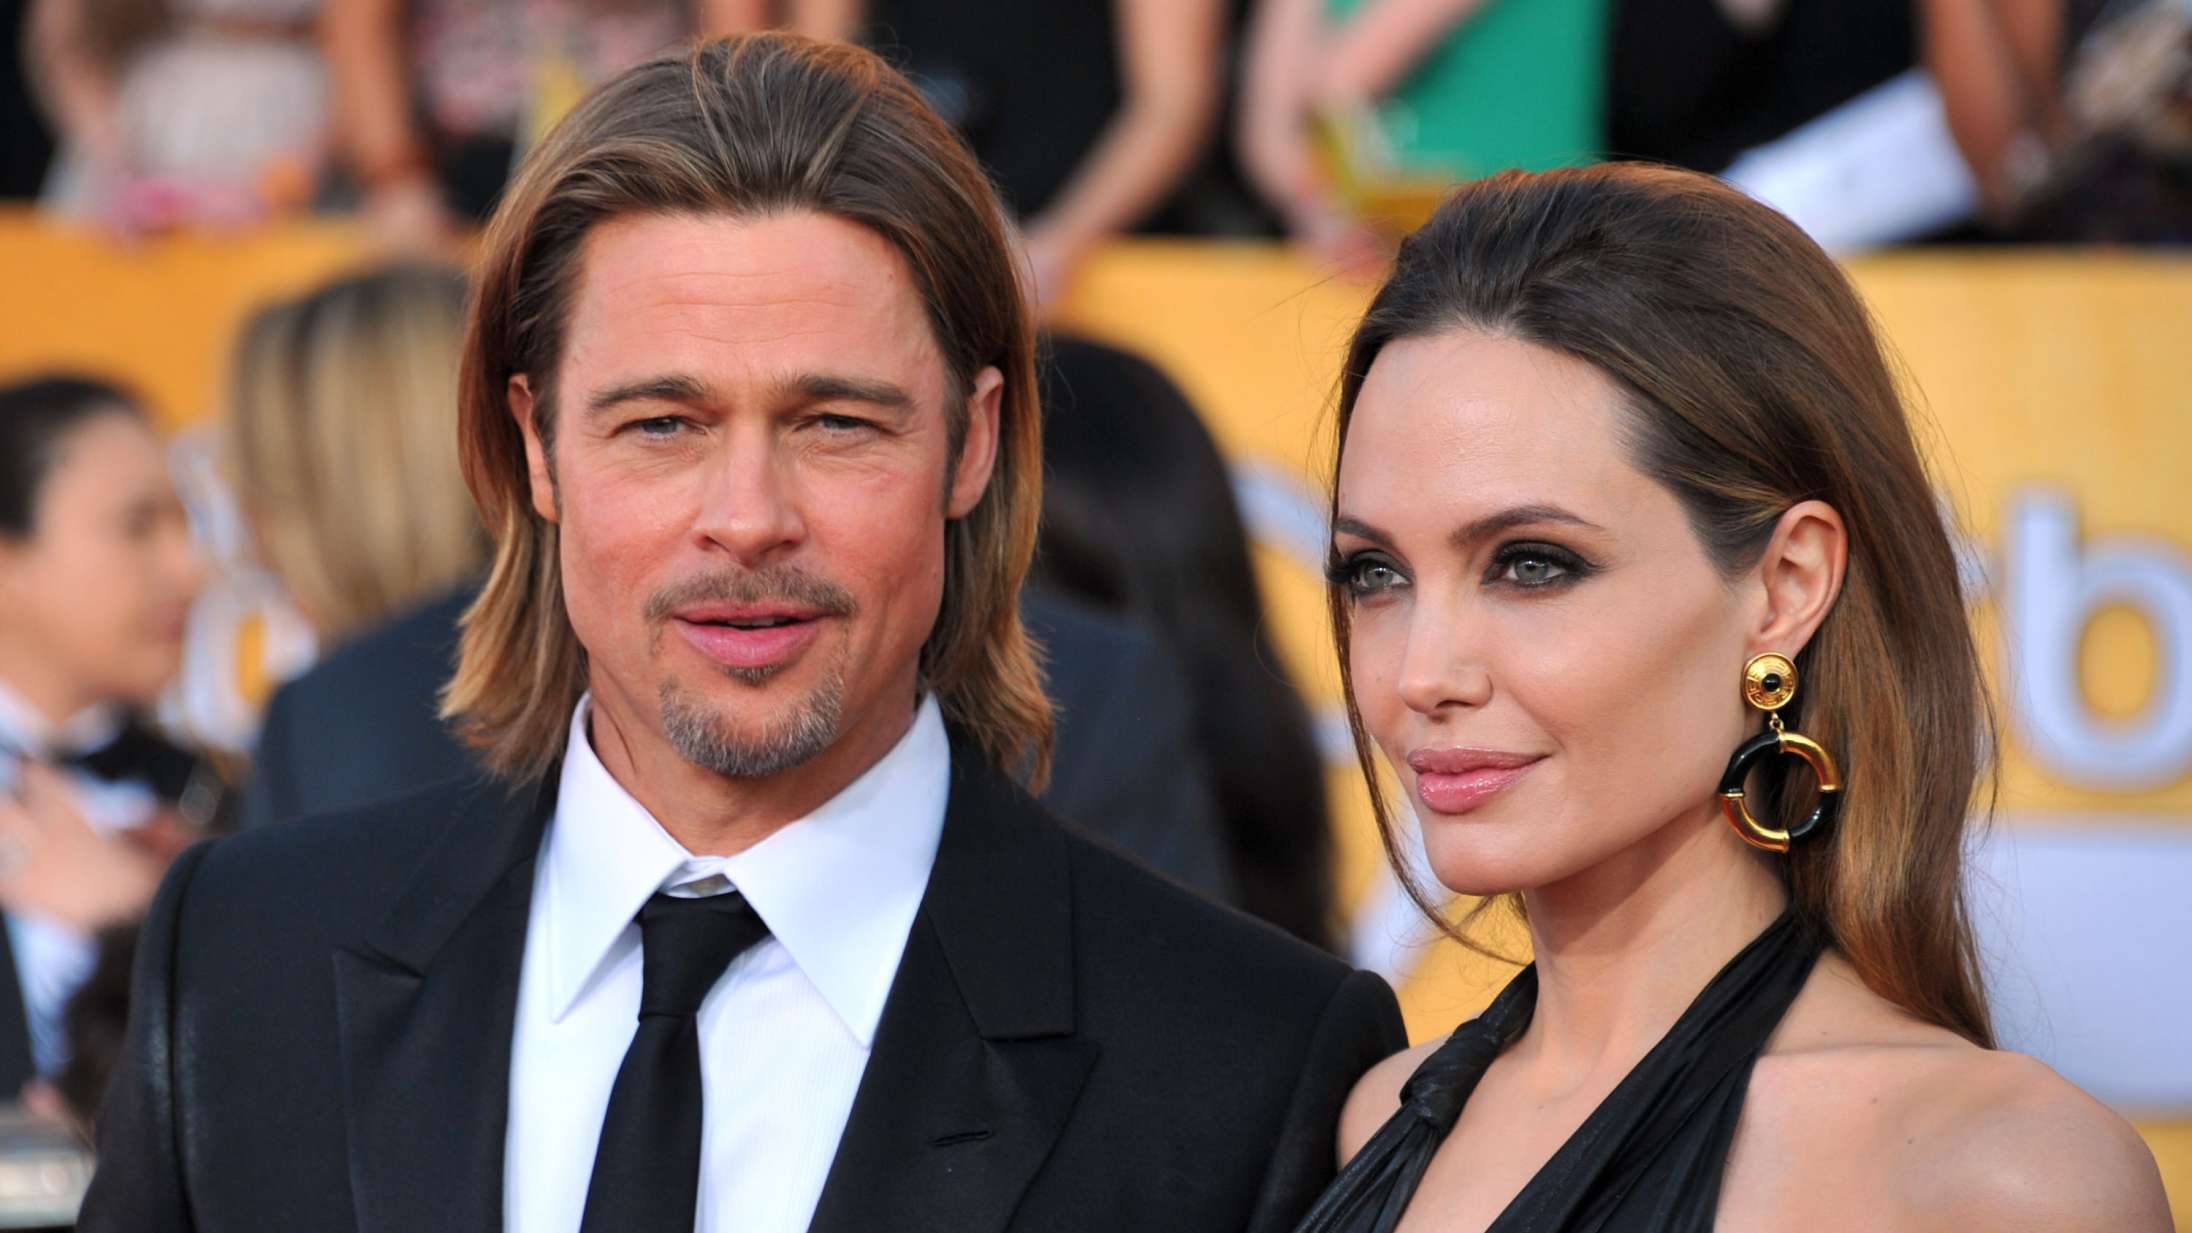 Brad Pitt »opførte sig som et monster« under flyvetur i 2016, ifølge Angelina Jolie